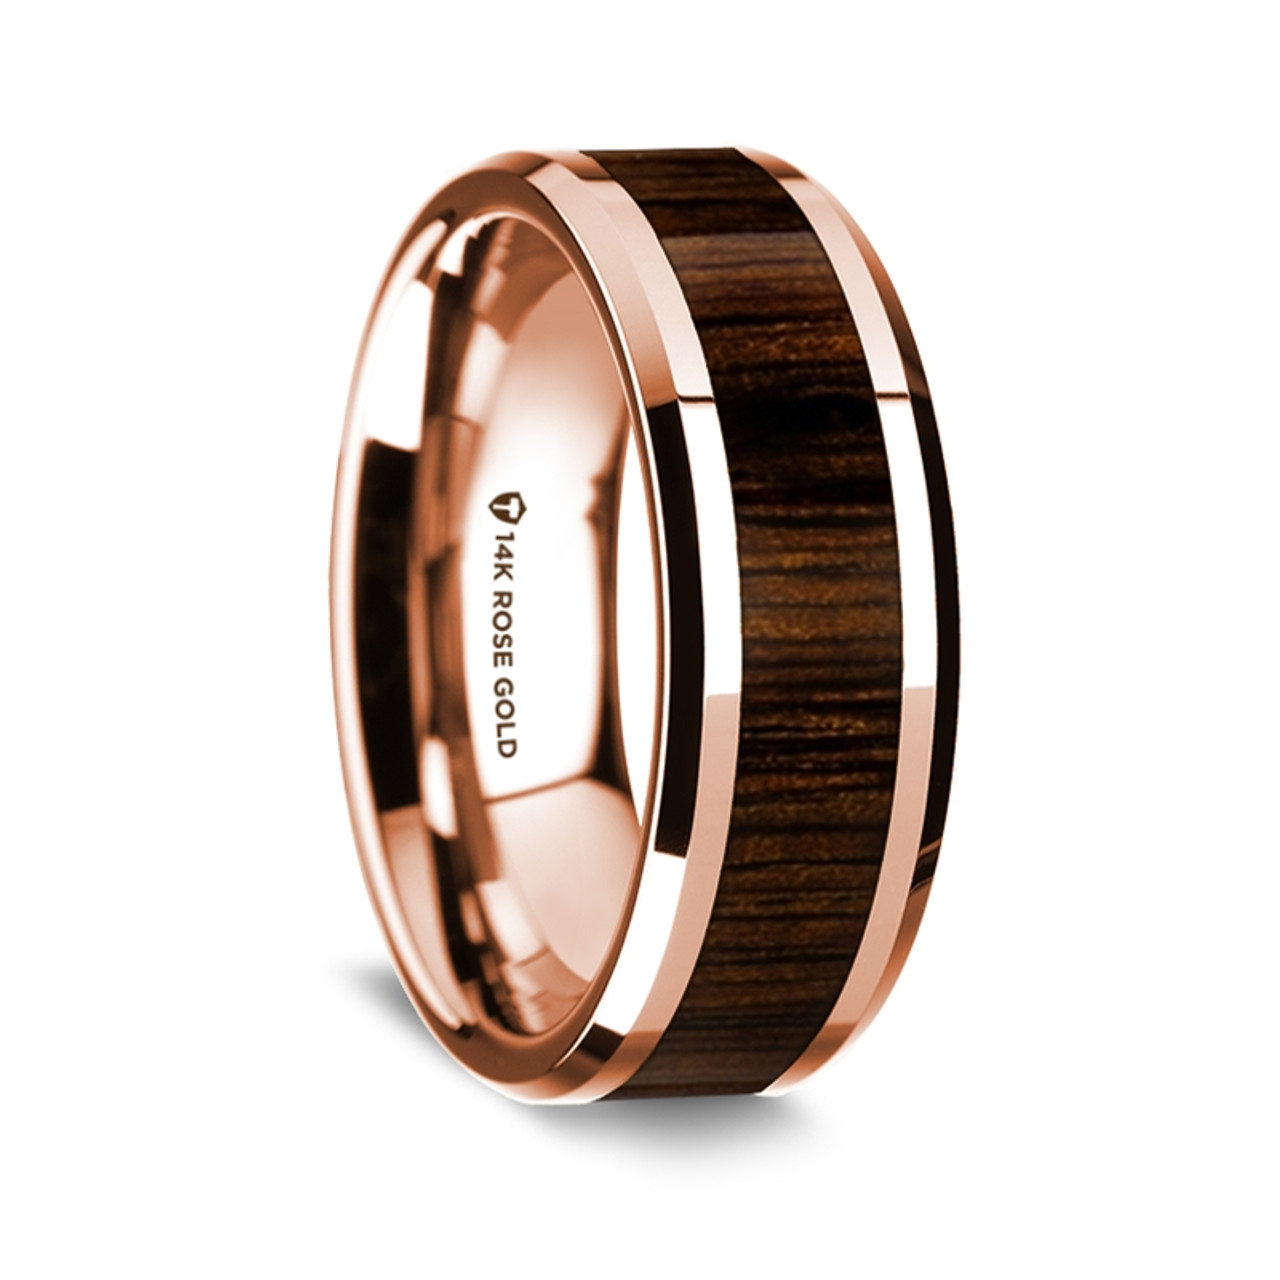 14K Rose Gold Polished Beveled Edges Wedding Ring with Black Walnut Inlay - 8 mm ~ (G65-110)